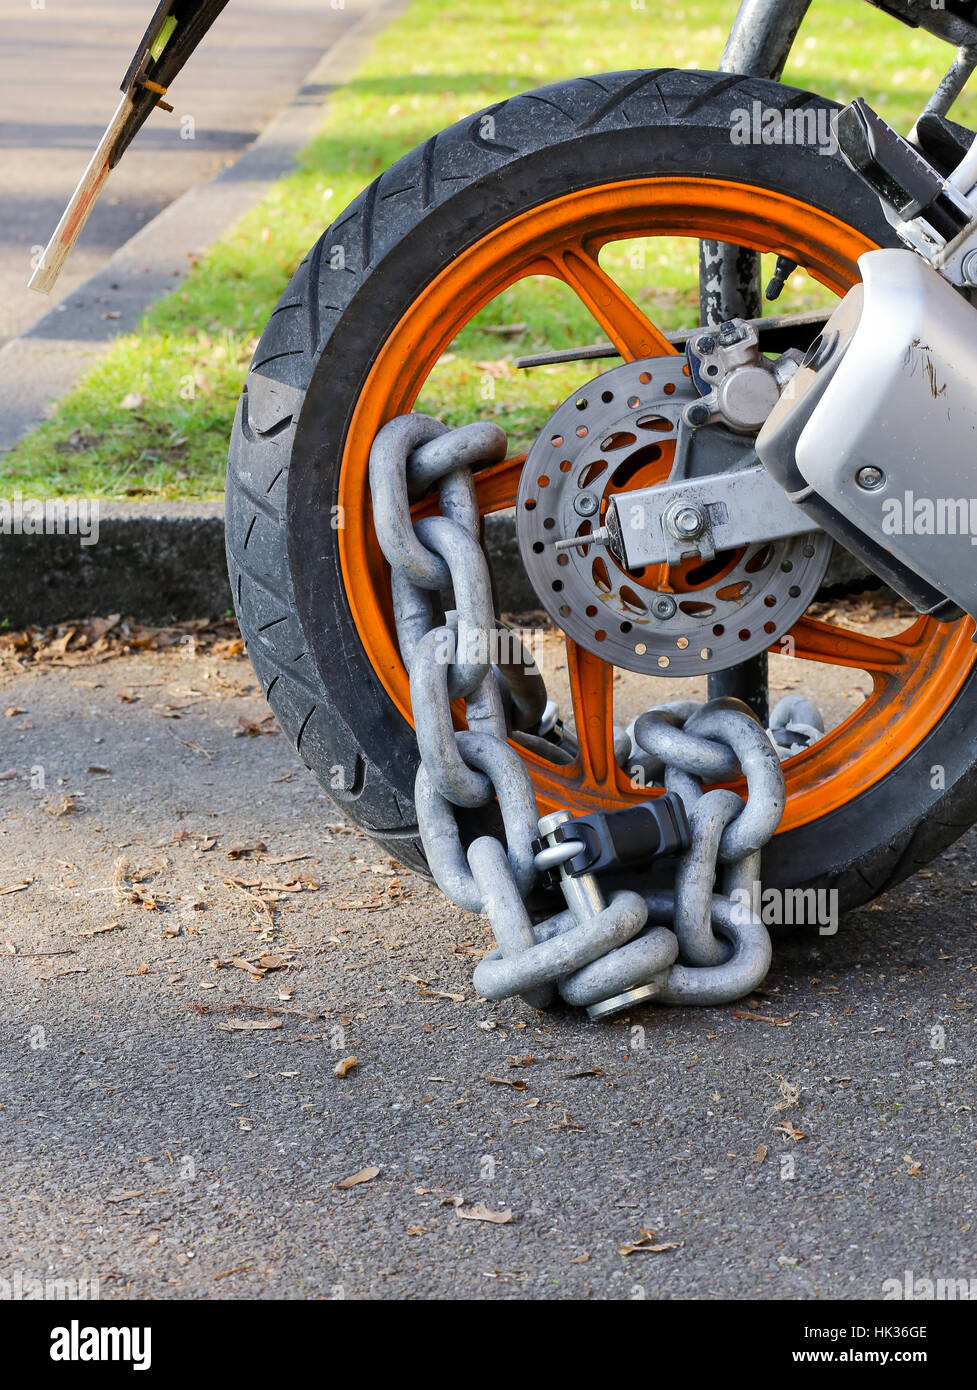 Motocicleta cadena antirrobo con candado de seguridad de bloqueo de la rueda trasera, la protección contra el robo stock Alamy